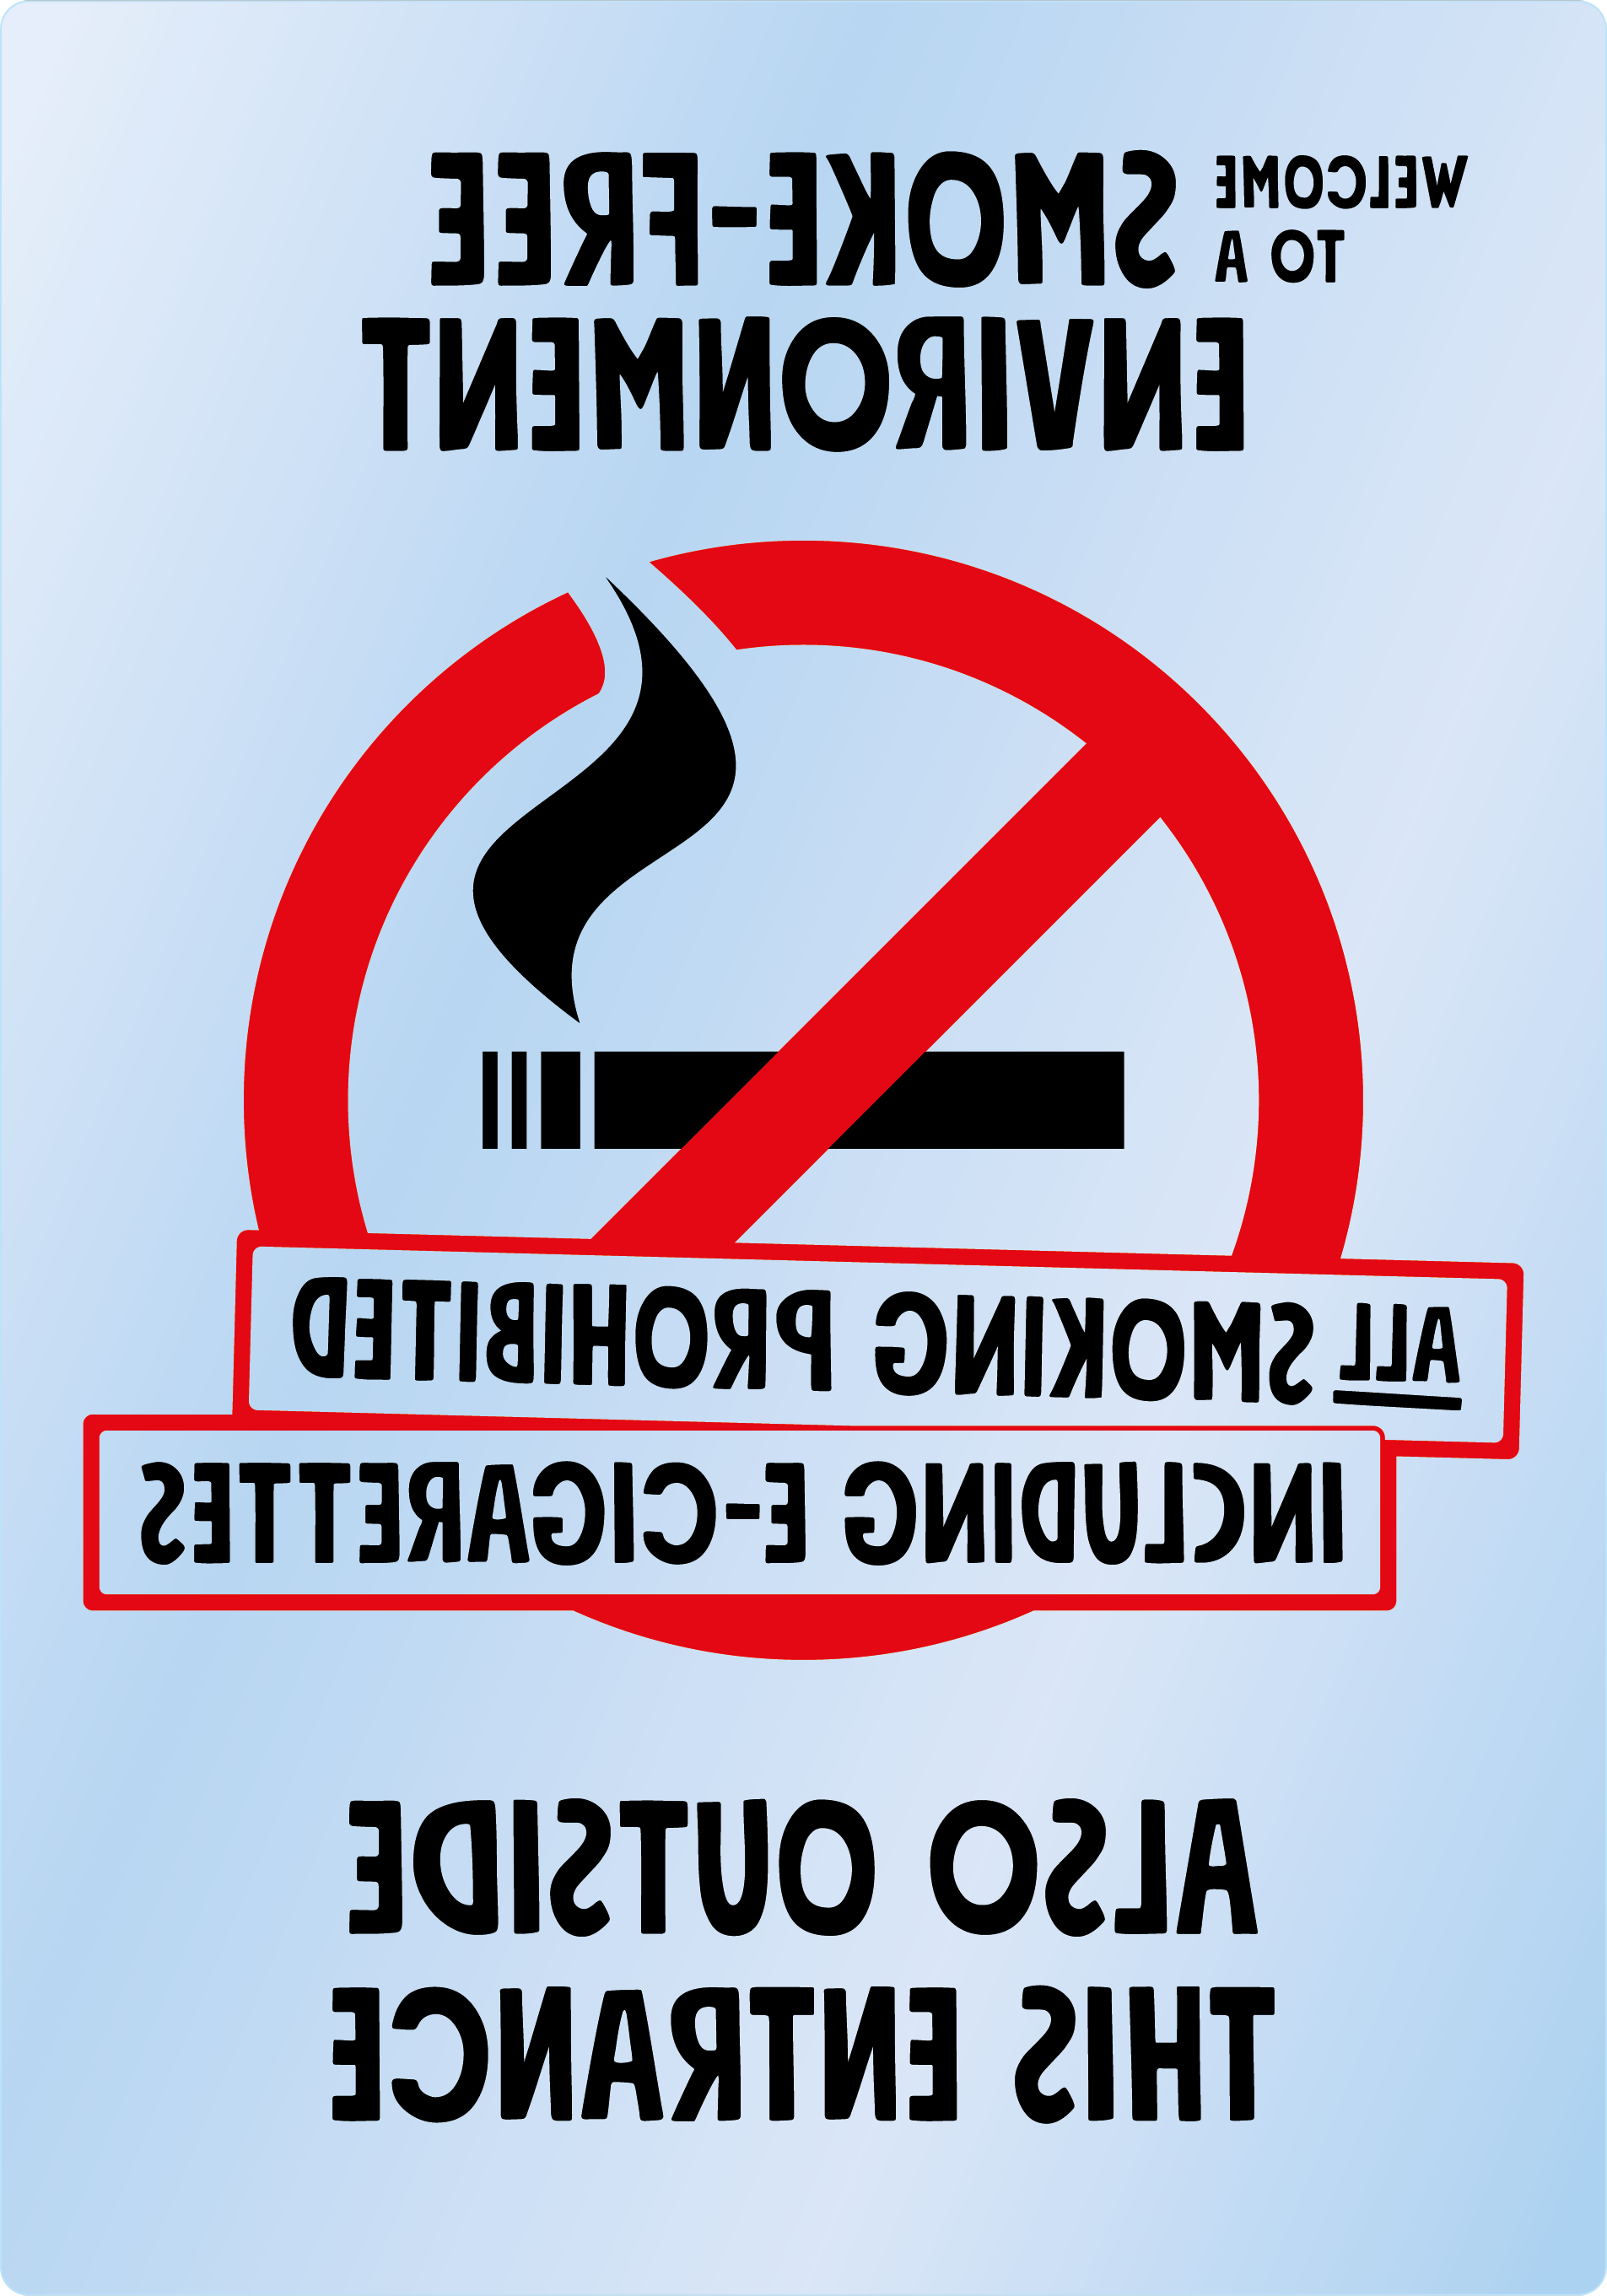 Bild rökförbudsskylt 04A12 ENG: Röd+Svart / Transparent